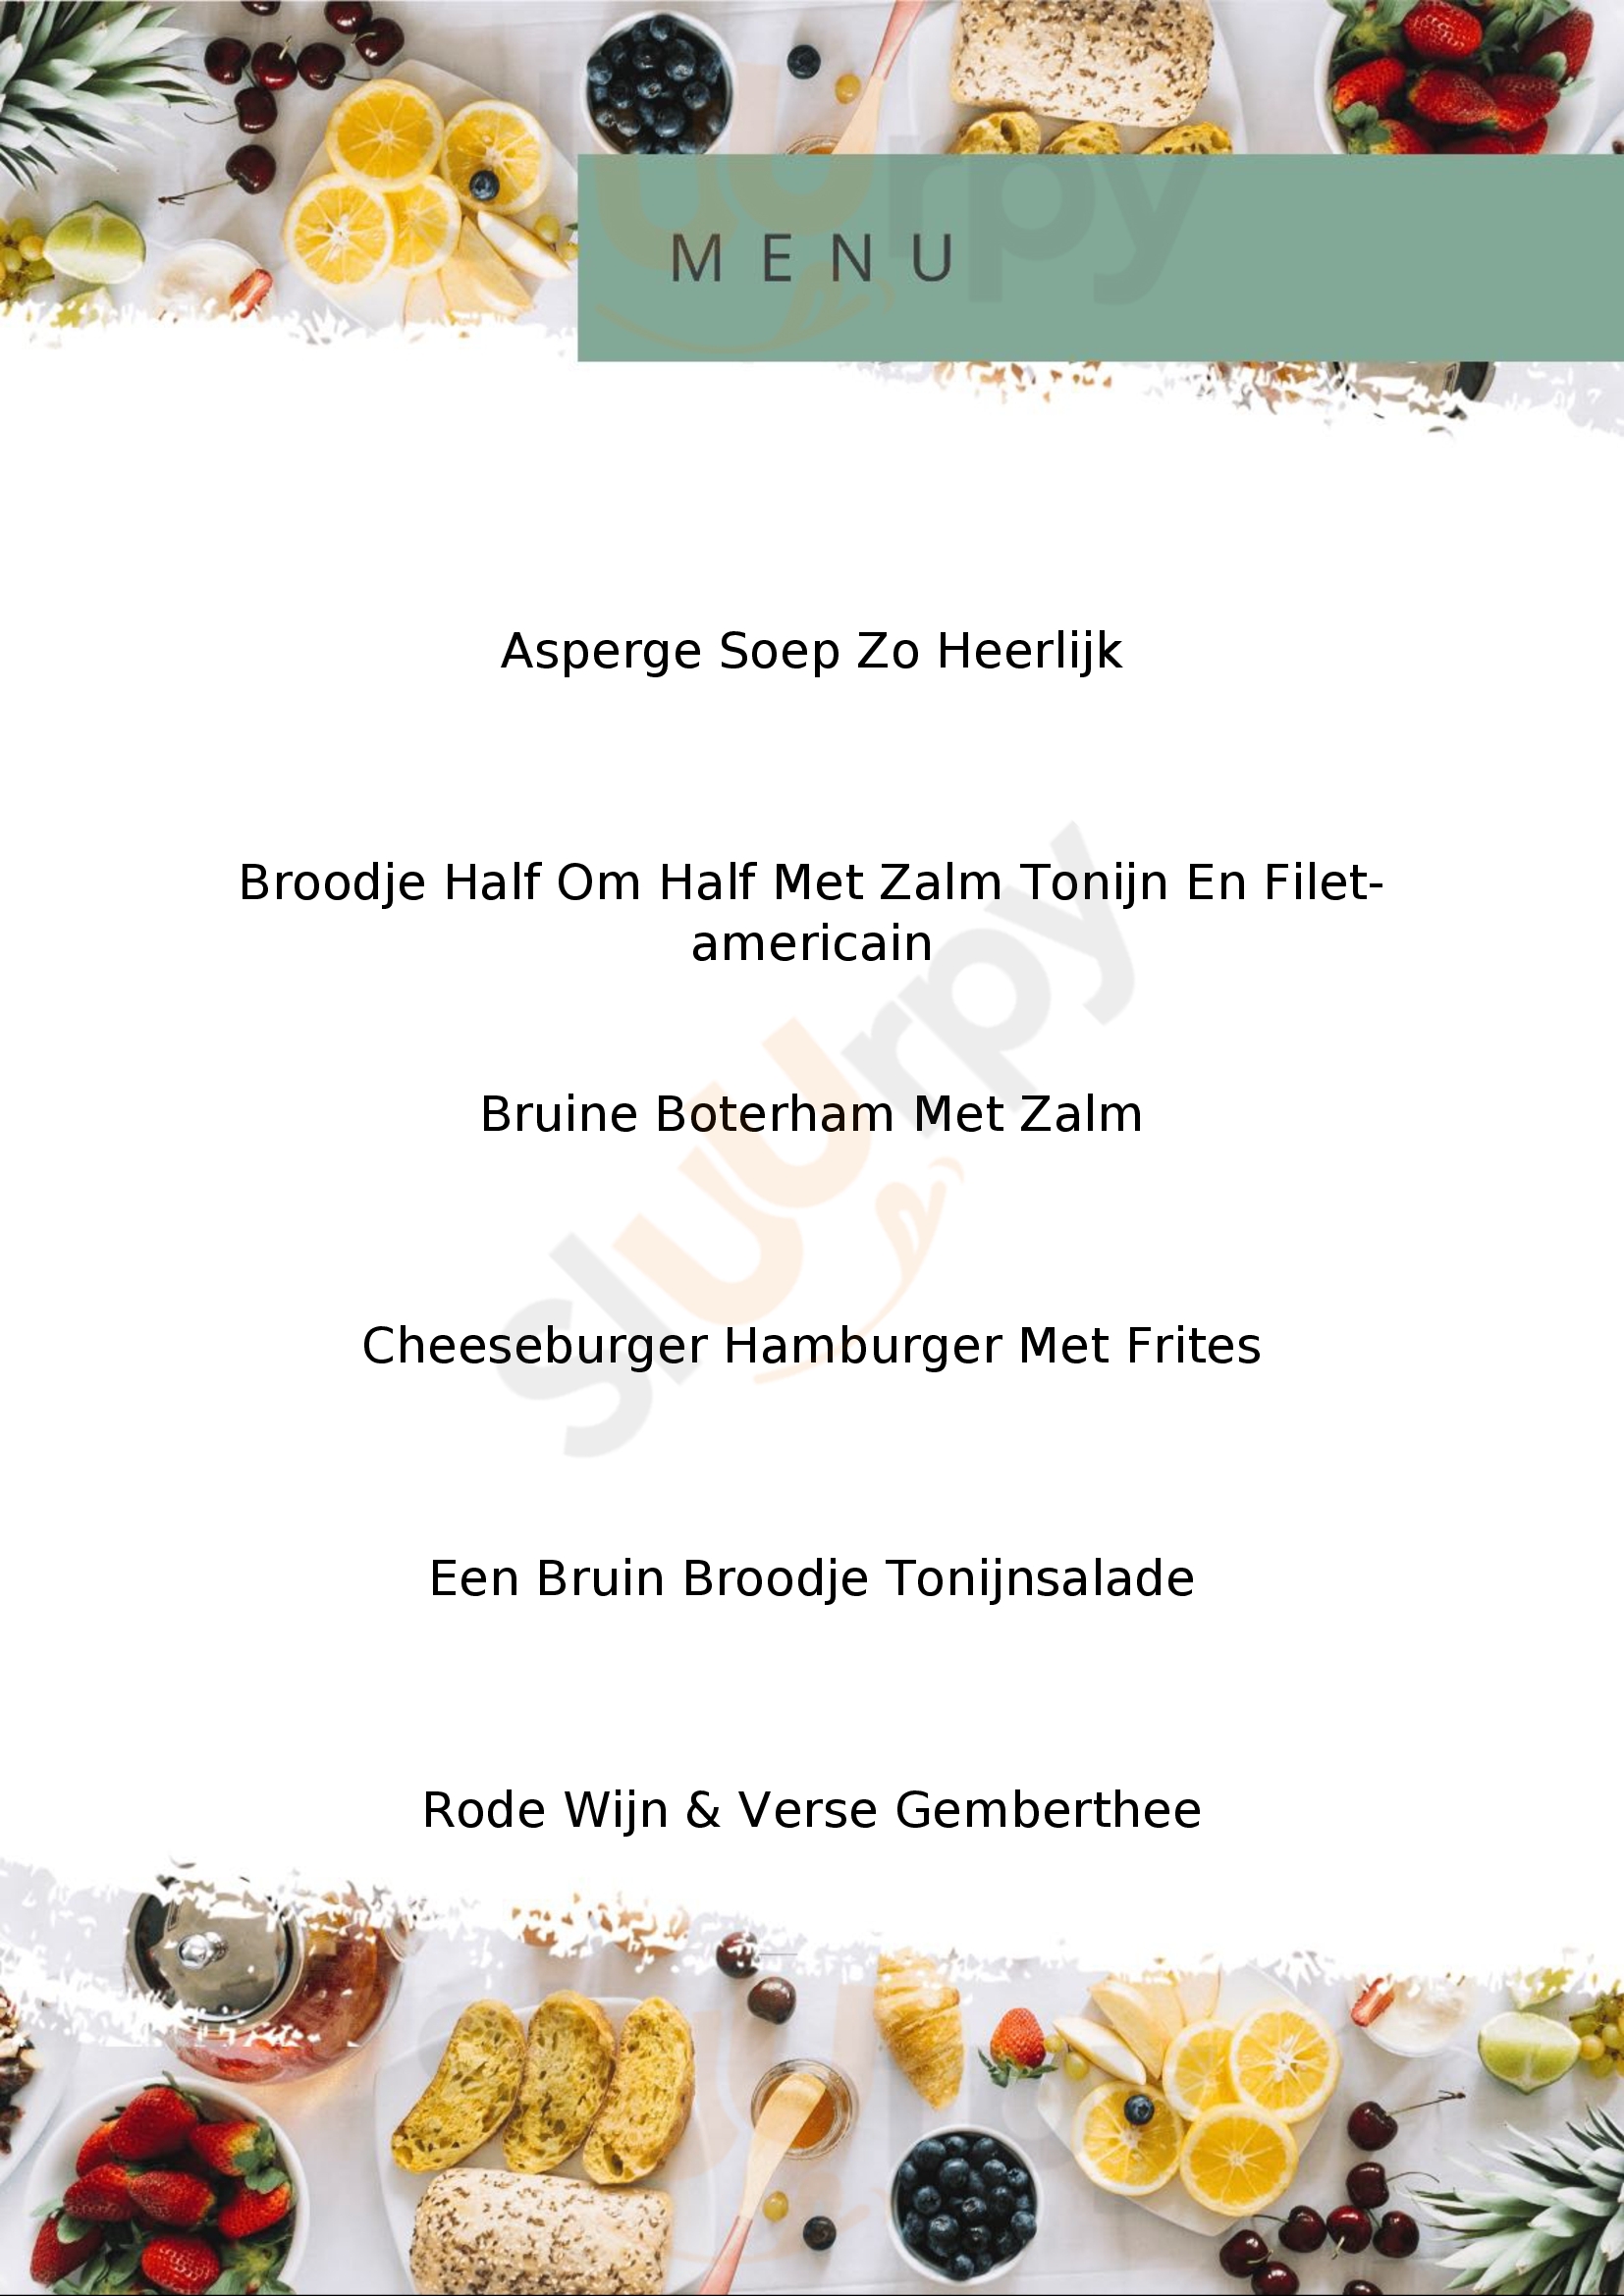 Brasserie De Belvertshoeve Oisterwijk Menu - 1